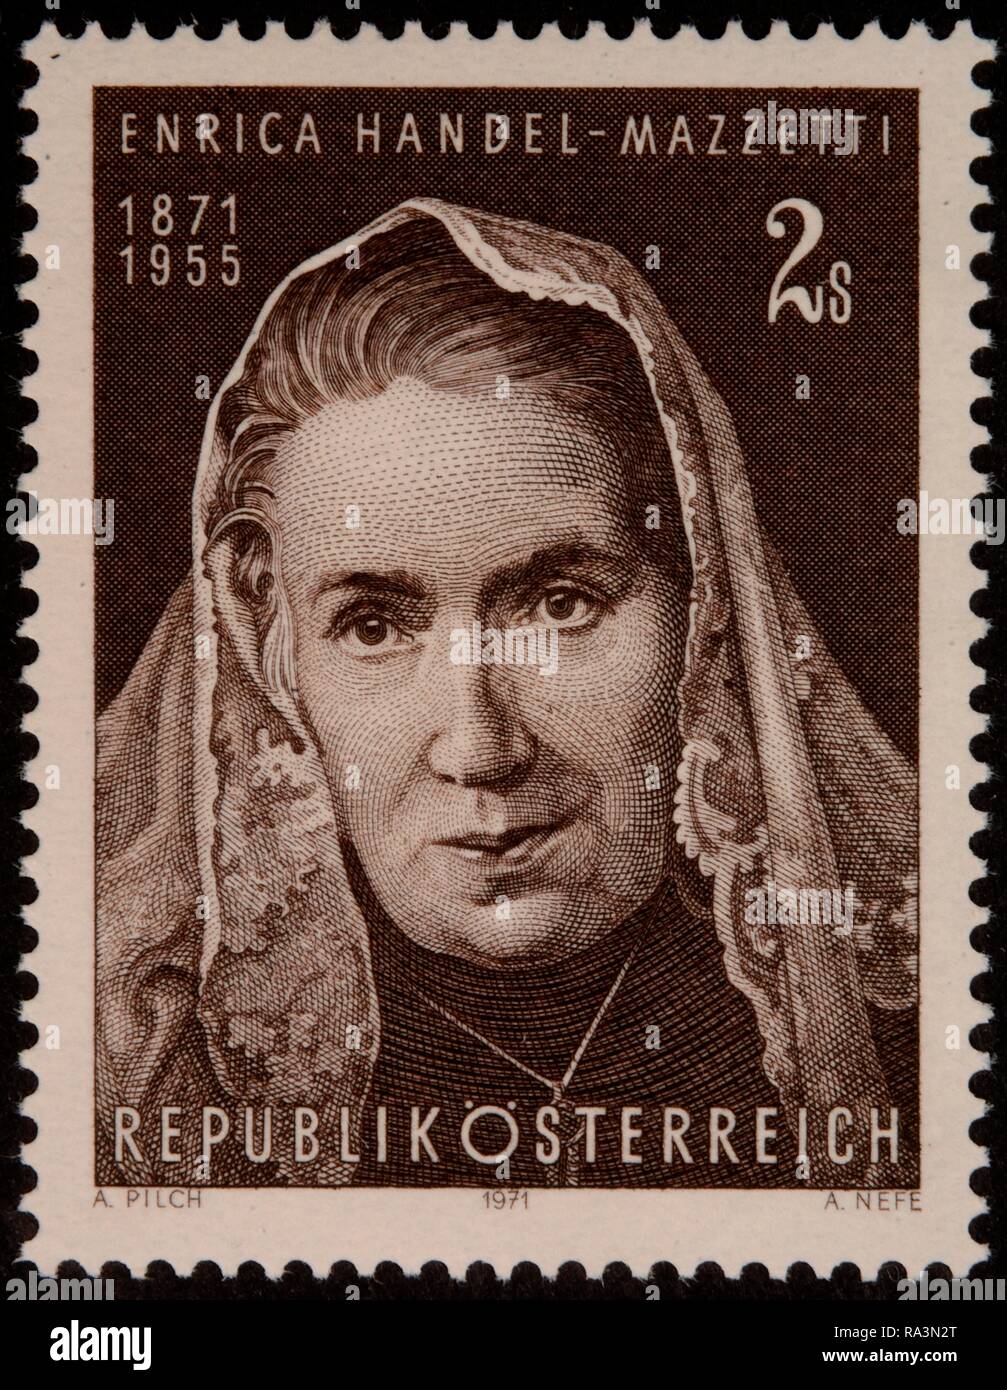 Enrica von Handel-Mazzetti, an Austrian poet and writer, portrait on an Austrian stamp, Austria Stock Photo